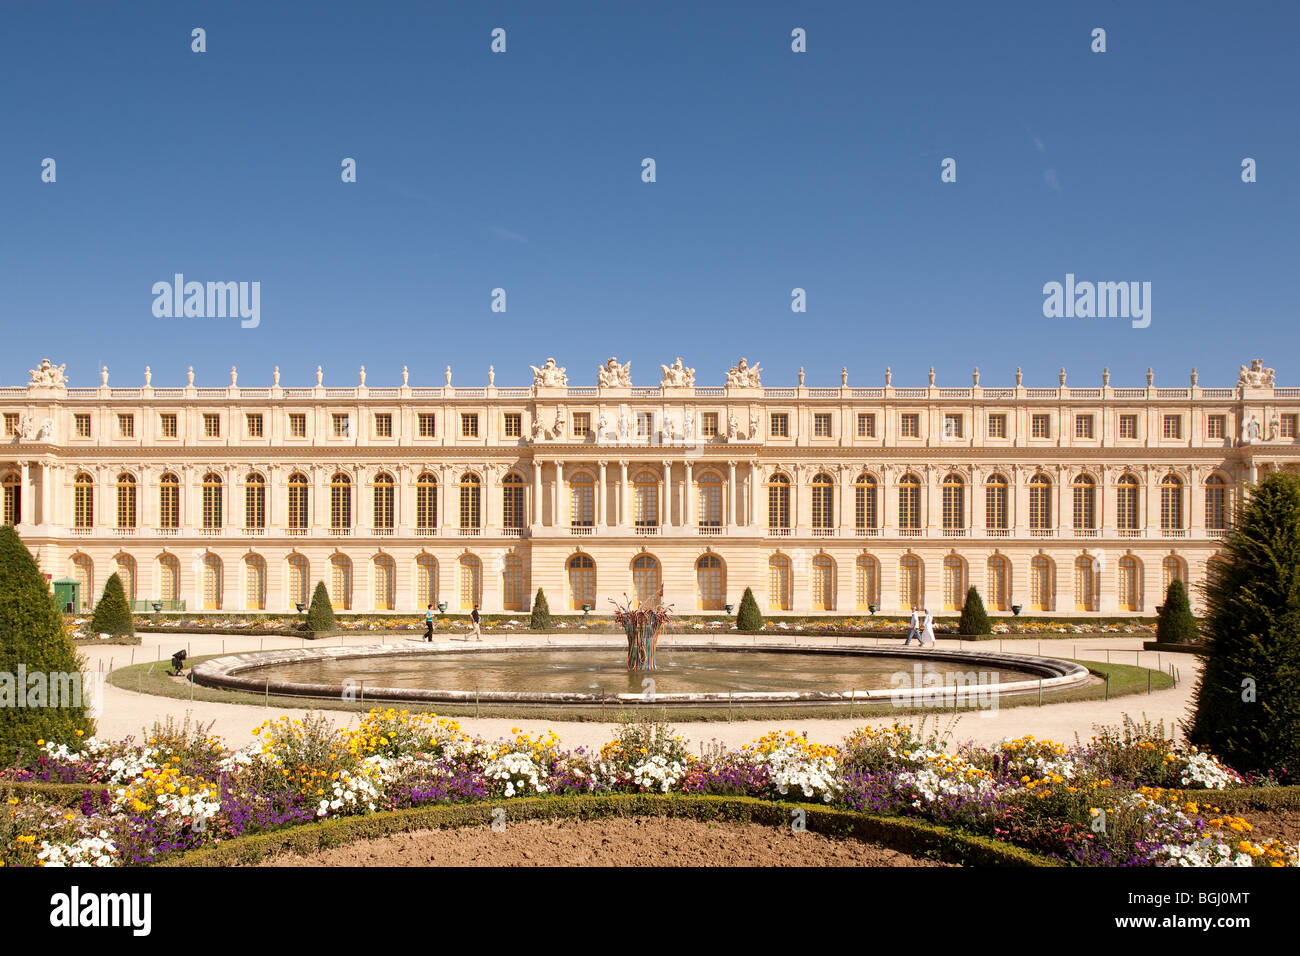 Château de Versailles, France. Stock Photo